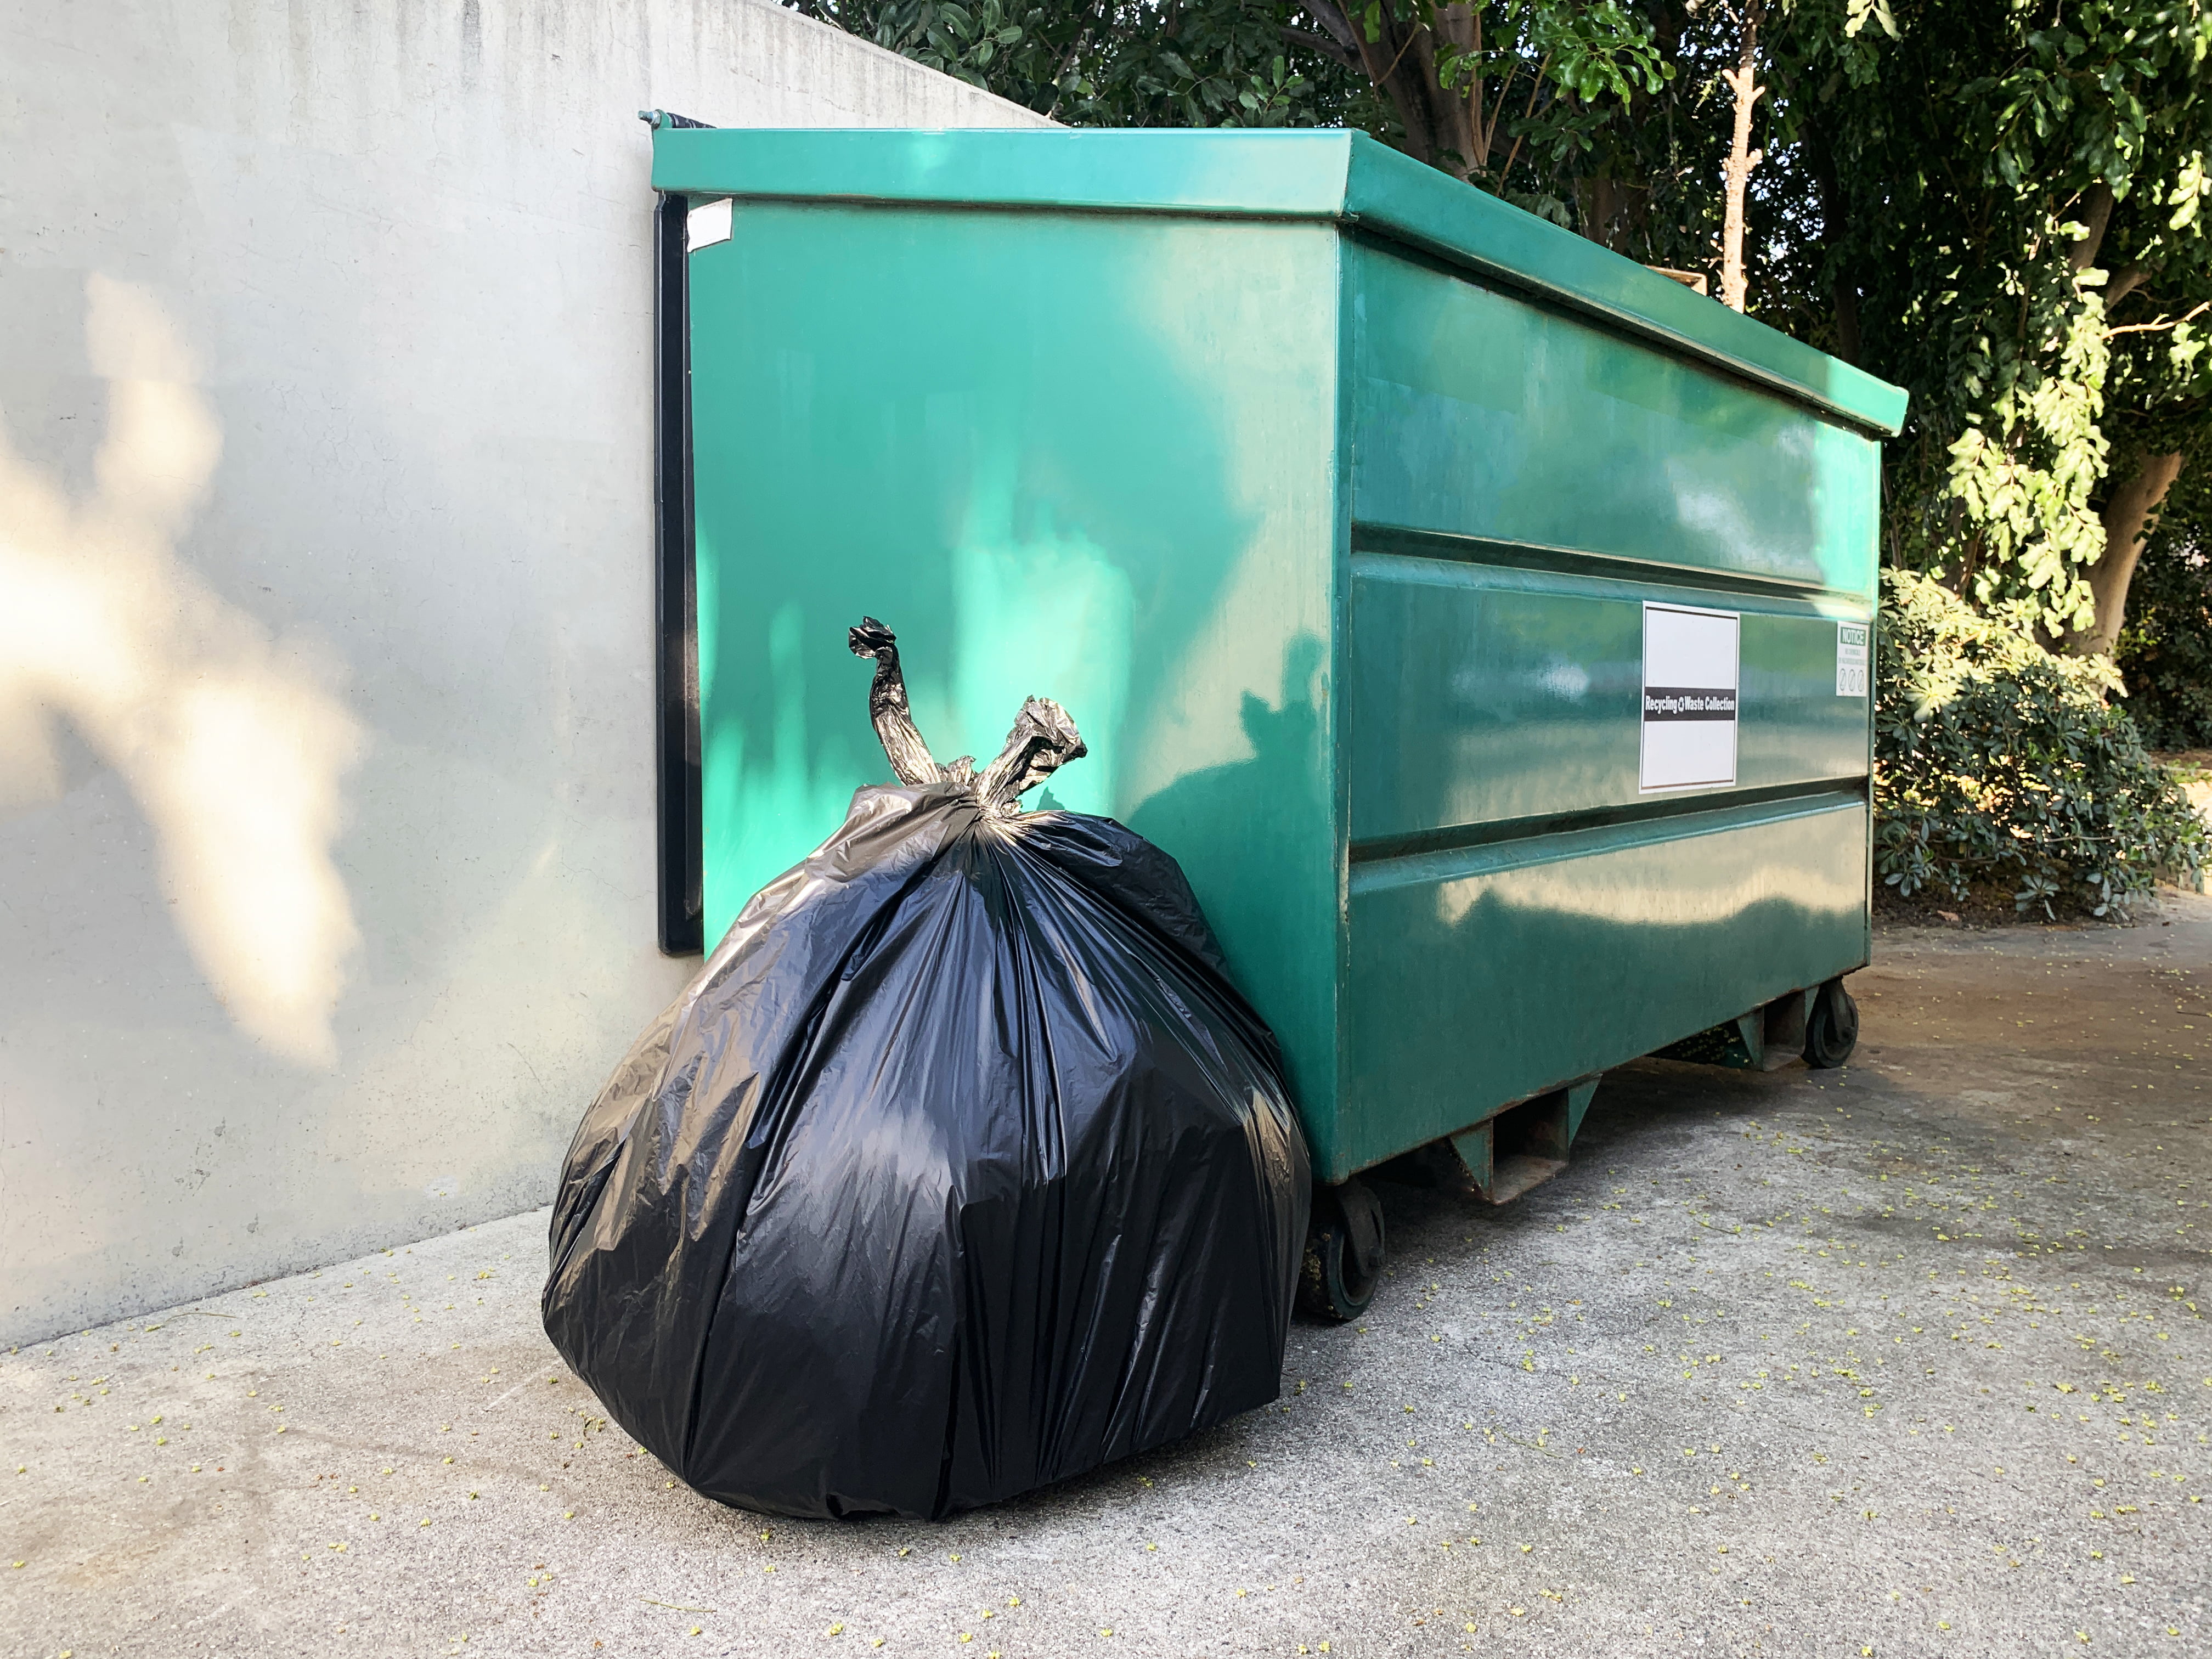 65 Gallon Trash Bags, (Huge 120 Bags Bulk) Large Trash Bags 65